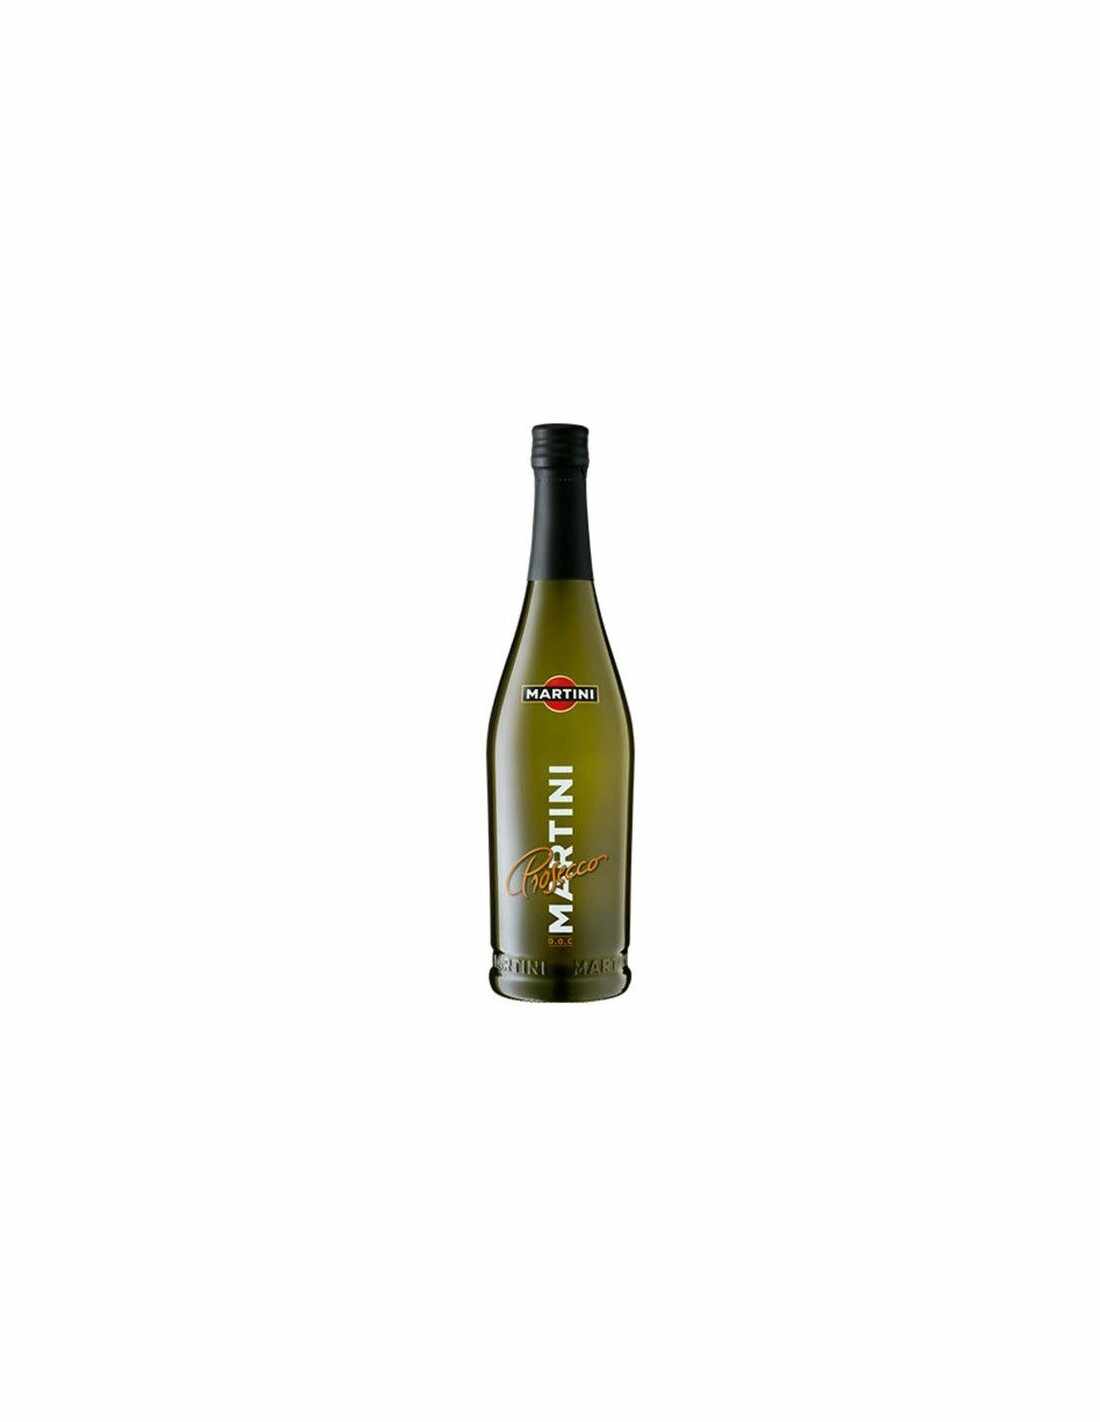 Vin alb prosecco Martini Veneto, 0.75L, 10.5% alc., Italia